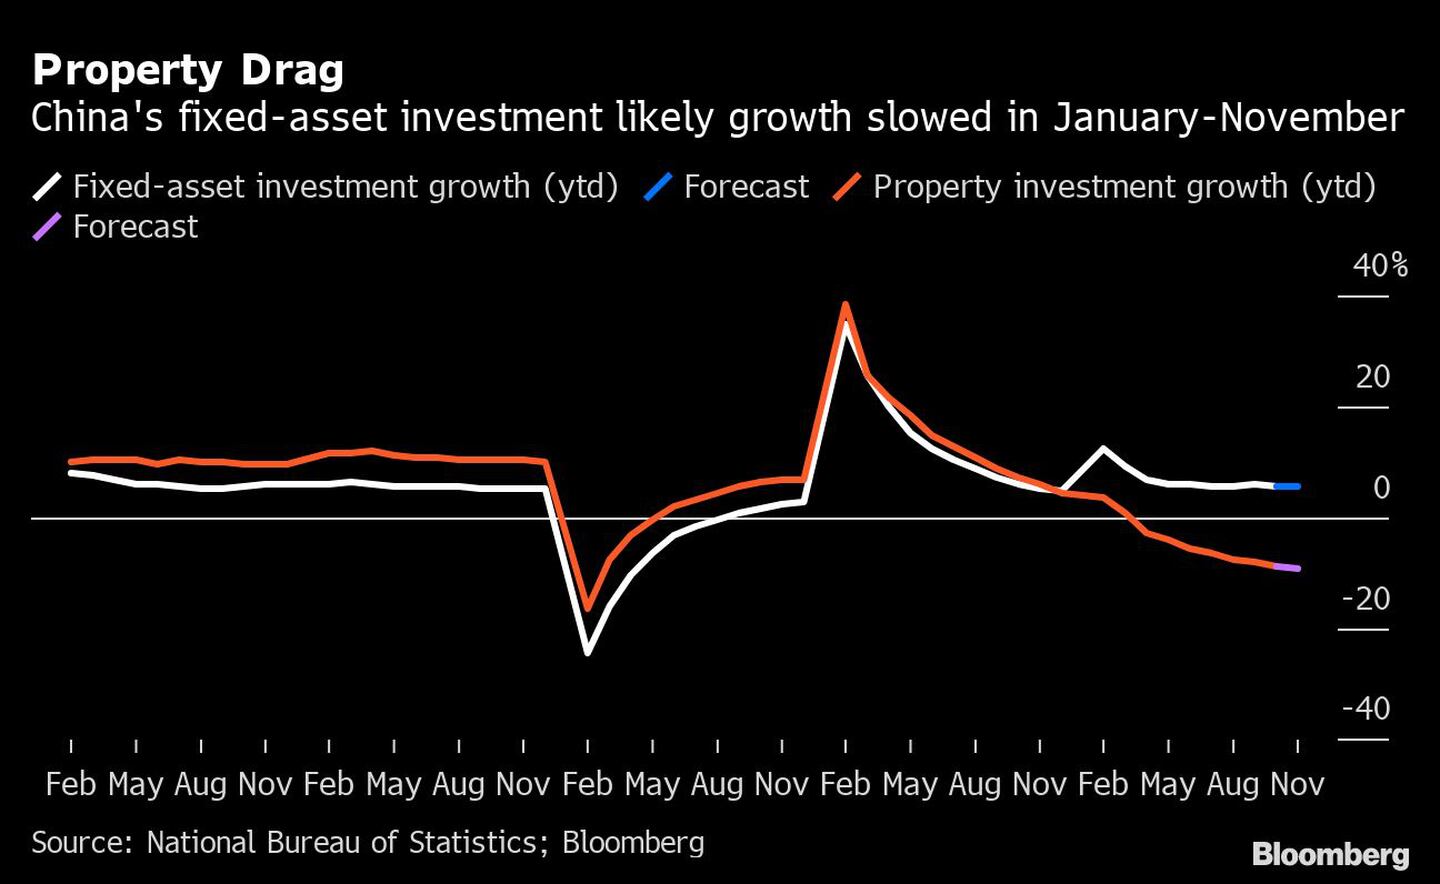 La inversión en activos fijos de China ralentiza su crecimiento en enero-noviembredfd